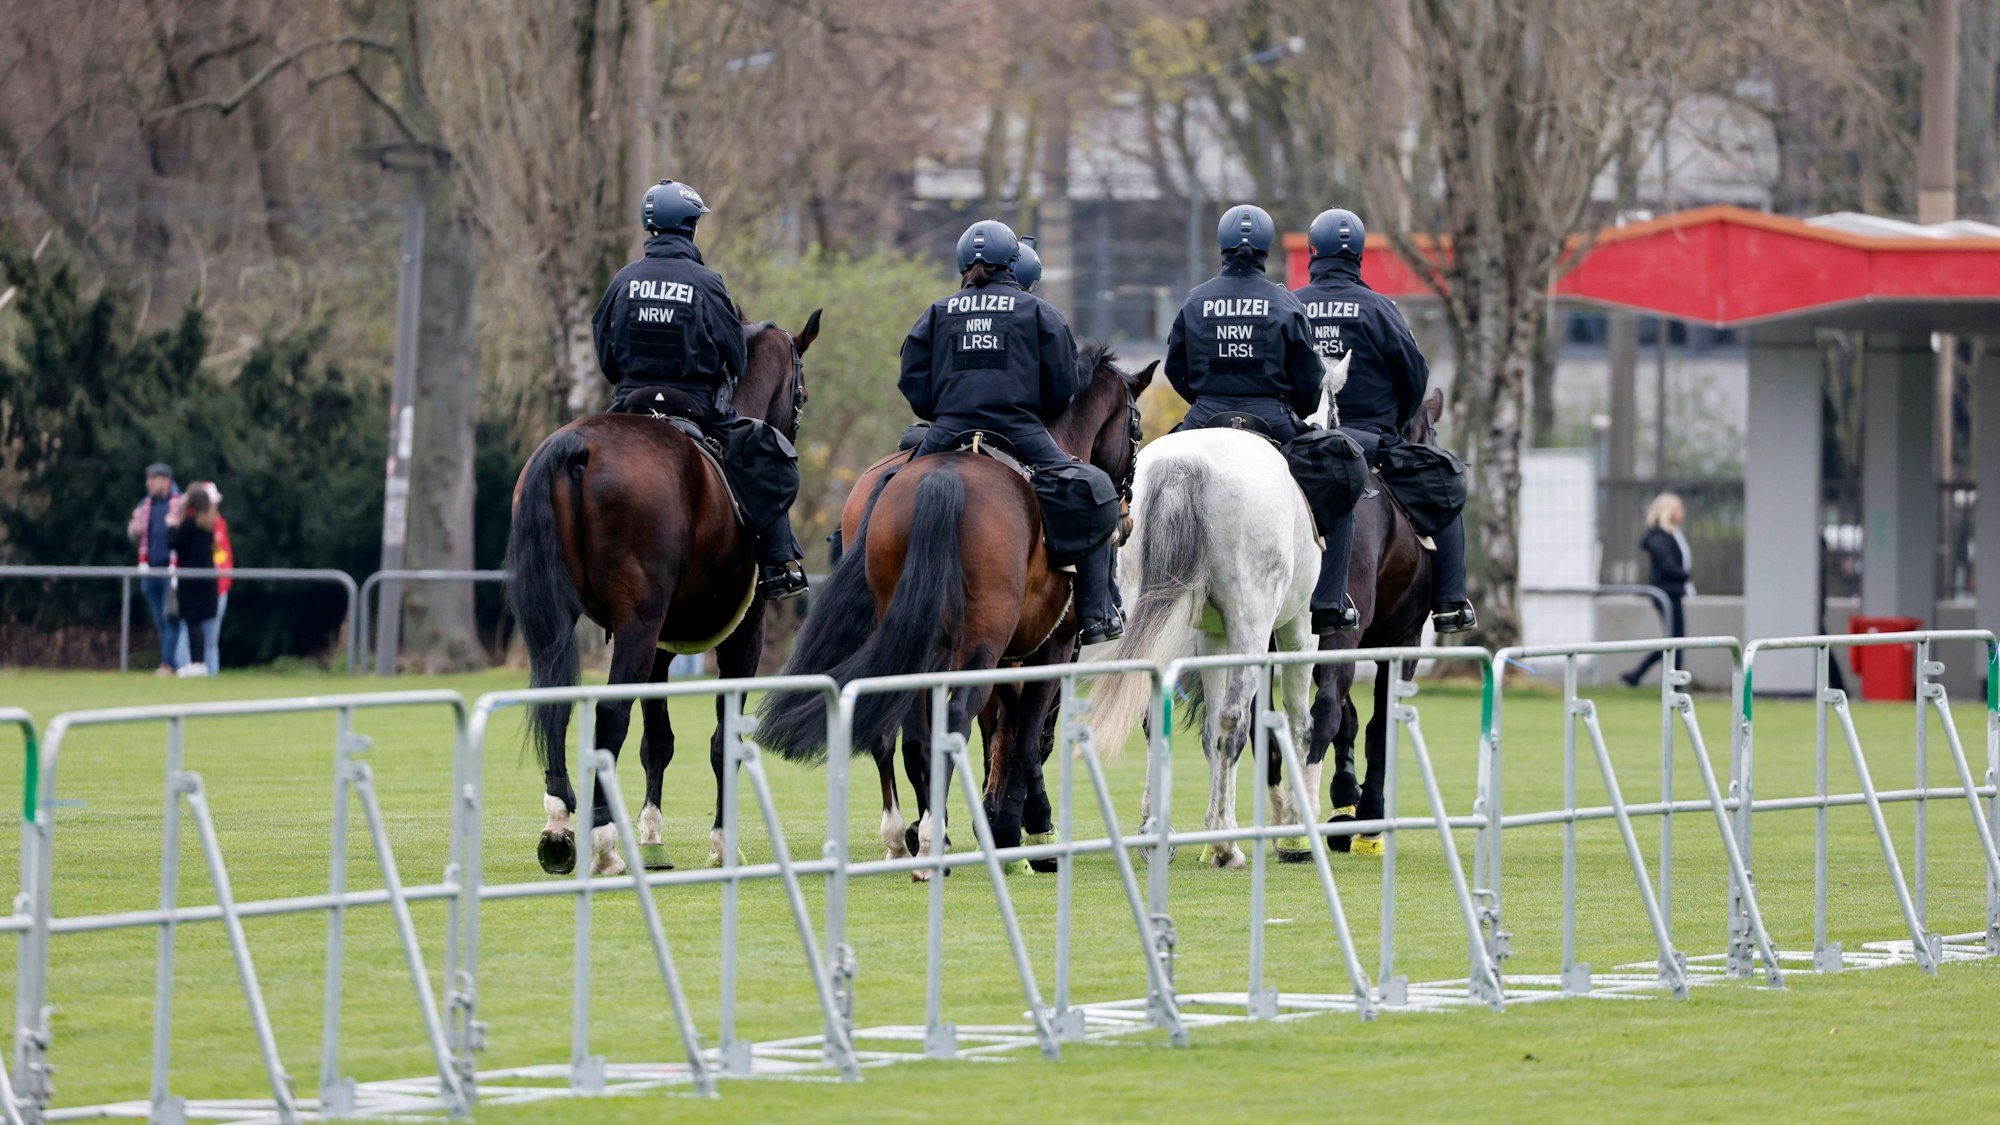 Vor dem Rhein-Energie-Stadion patroulliert eine Polizei-Reiterstaffel aus fünf Pferden.